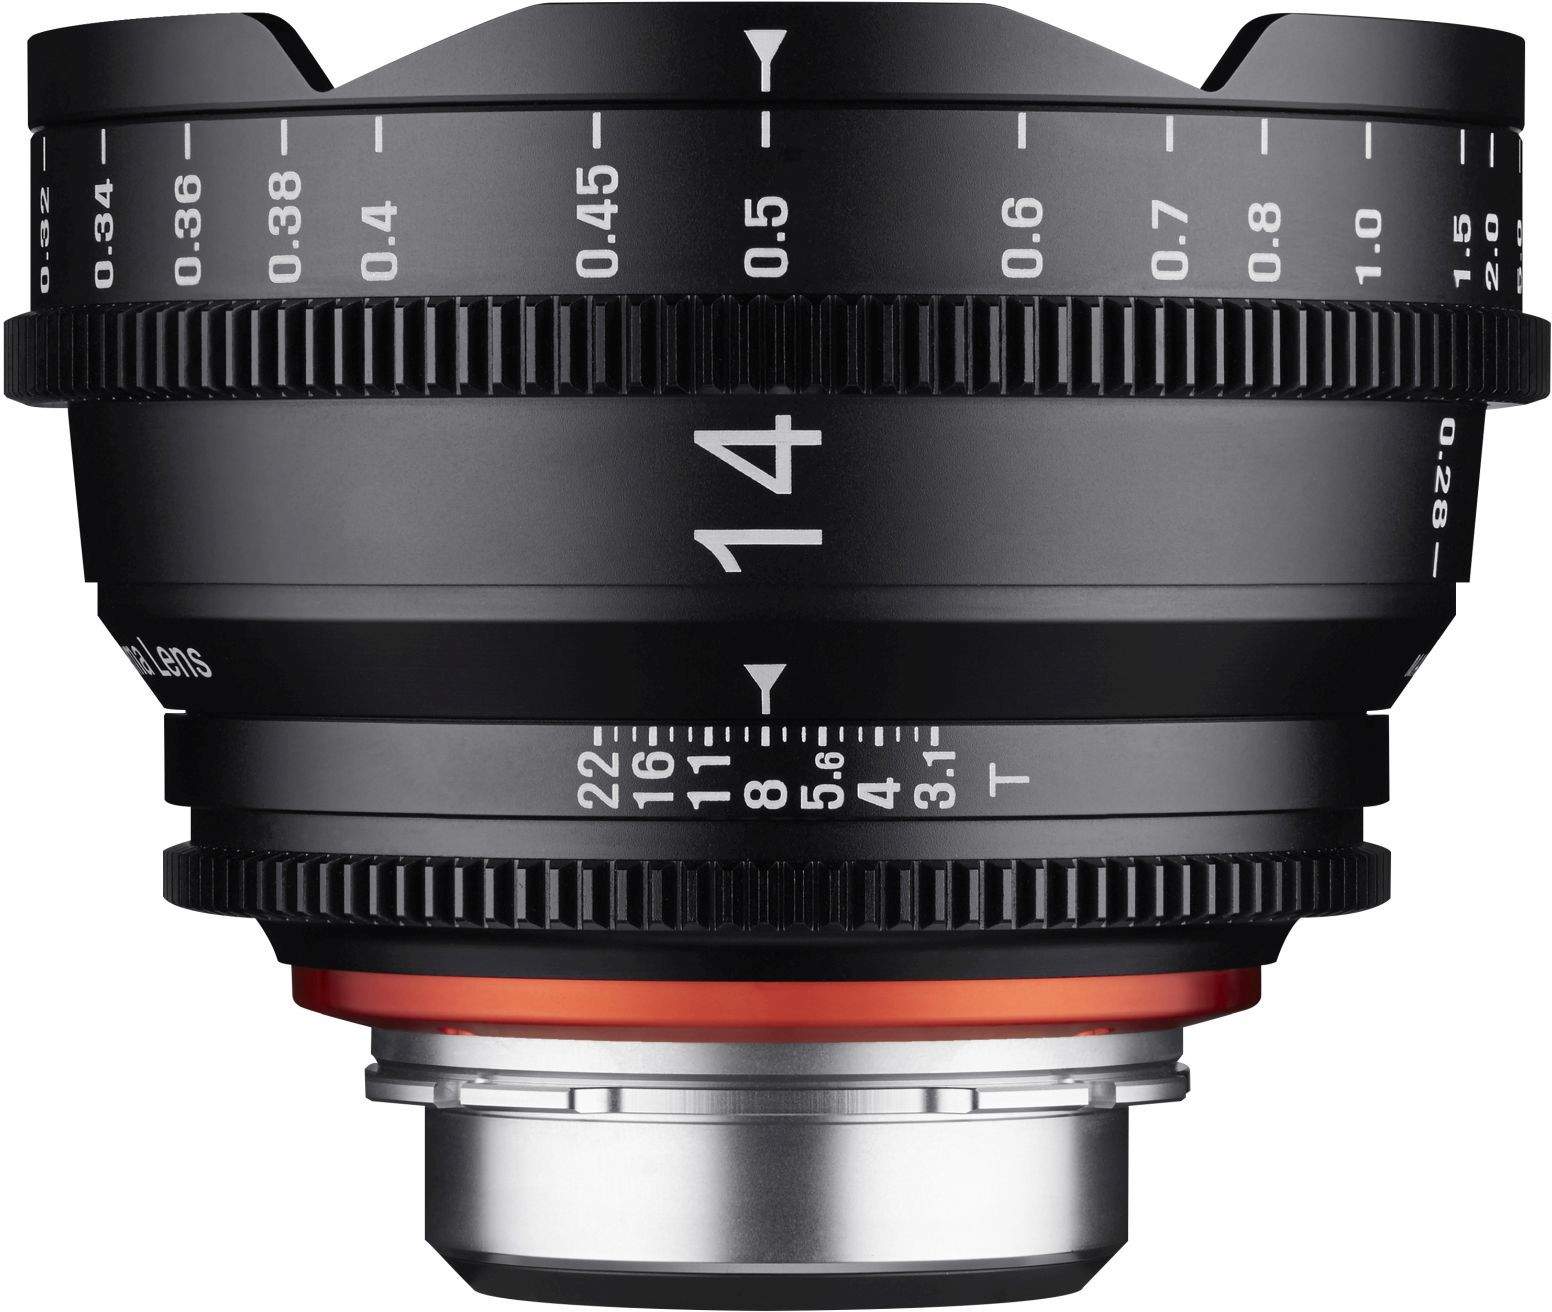 14mm T3.1 XEEN Nikon Full Frame Cinema Lens main image